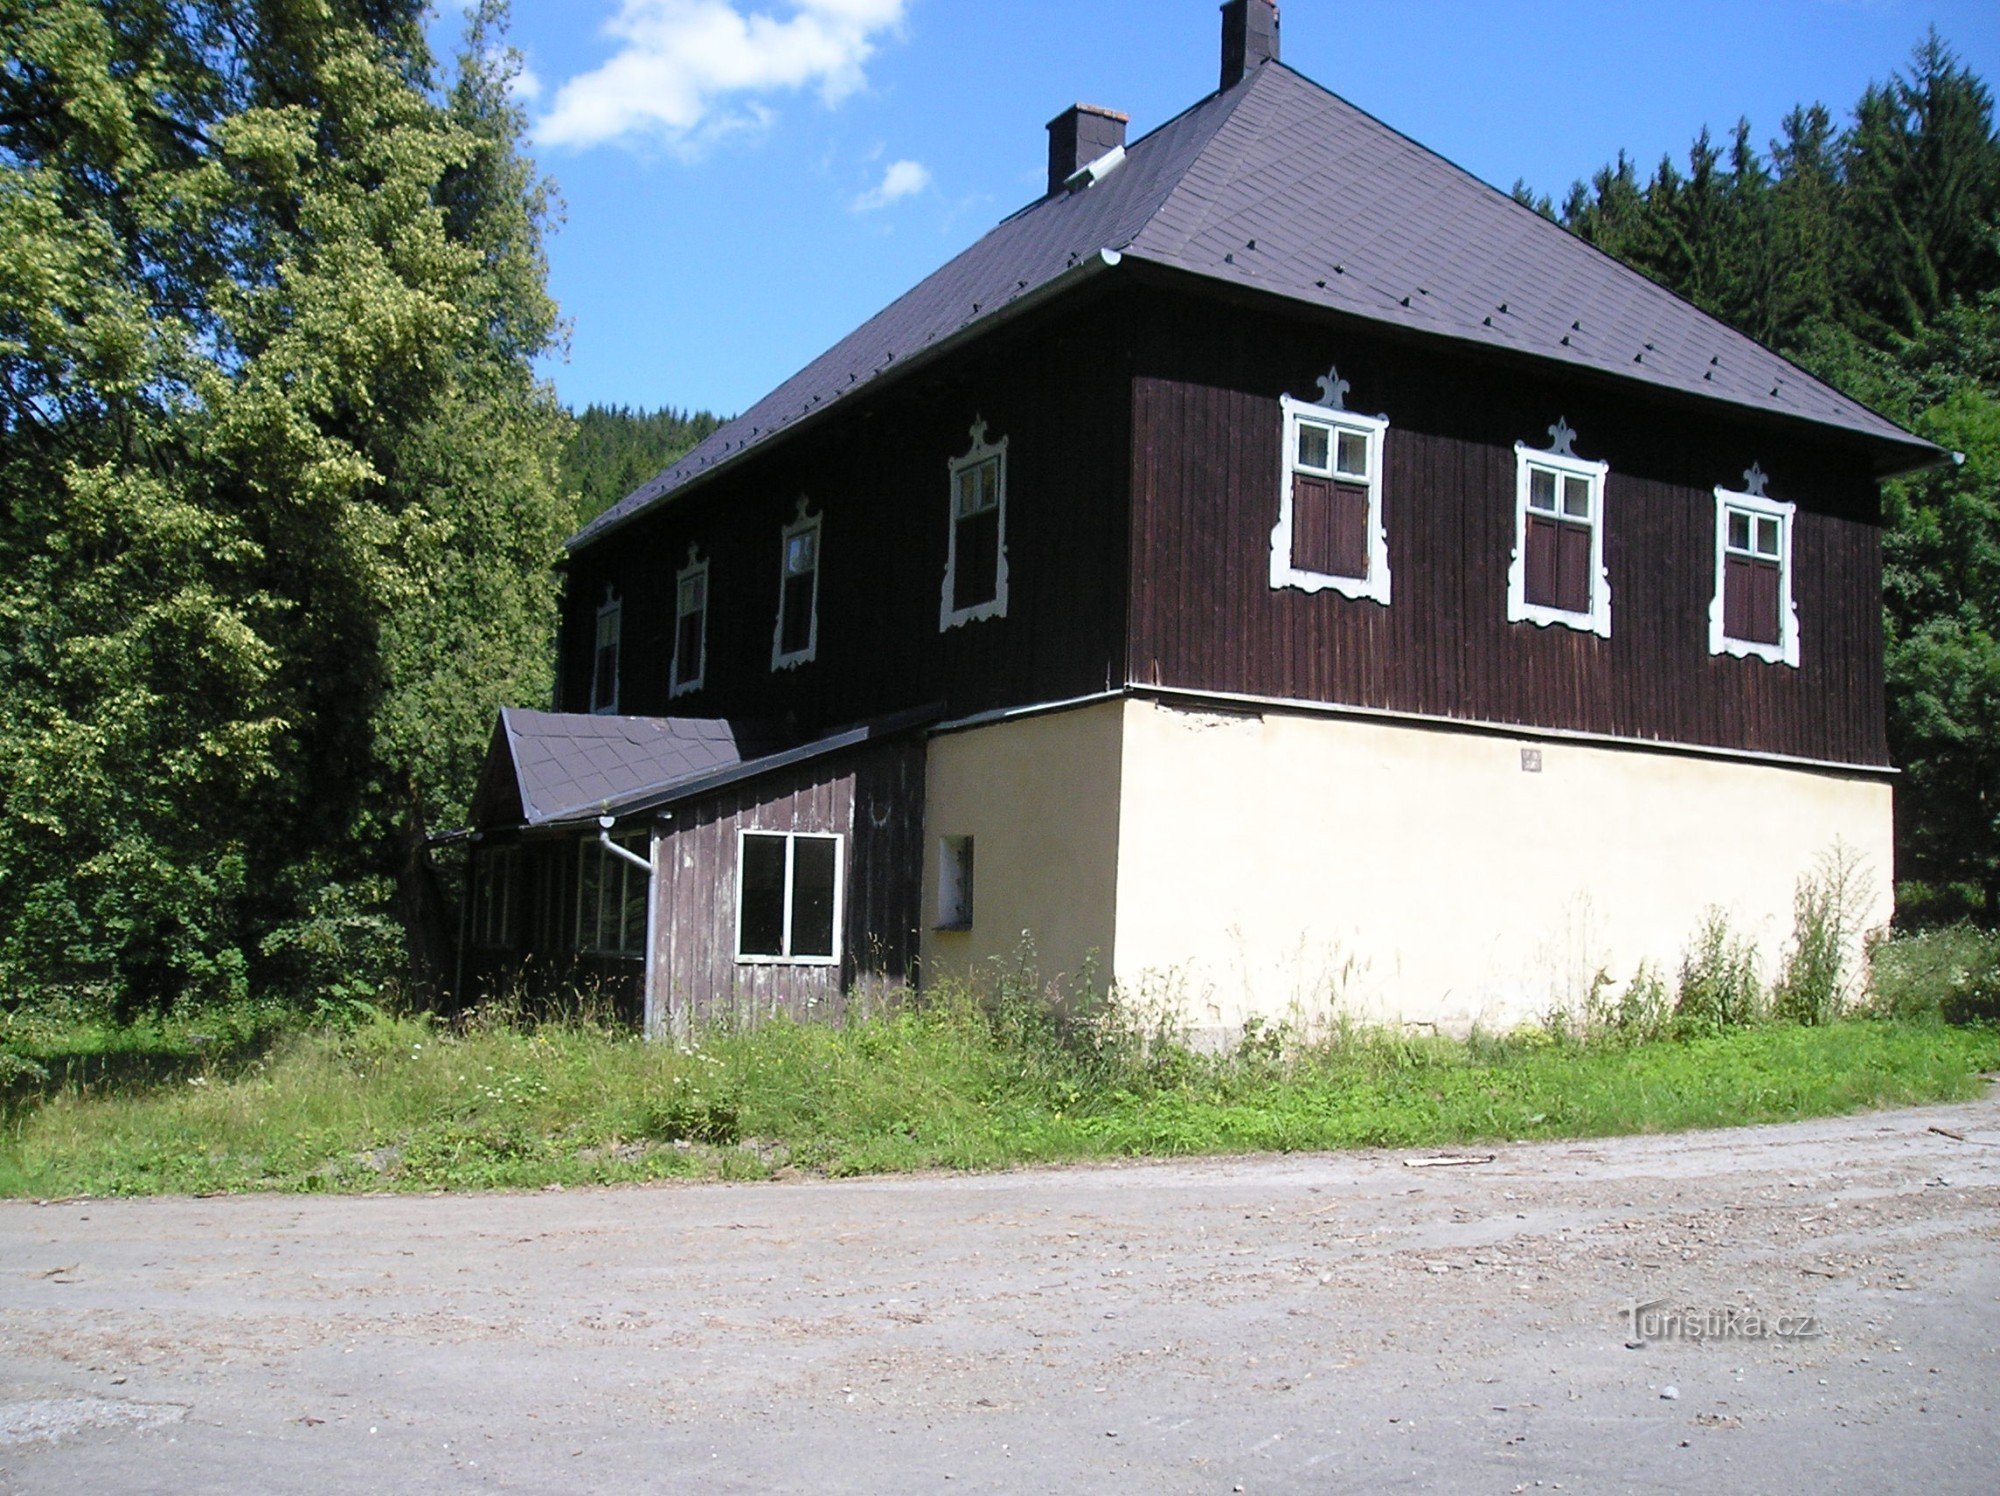 Hájenka, léto 2007-1